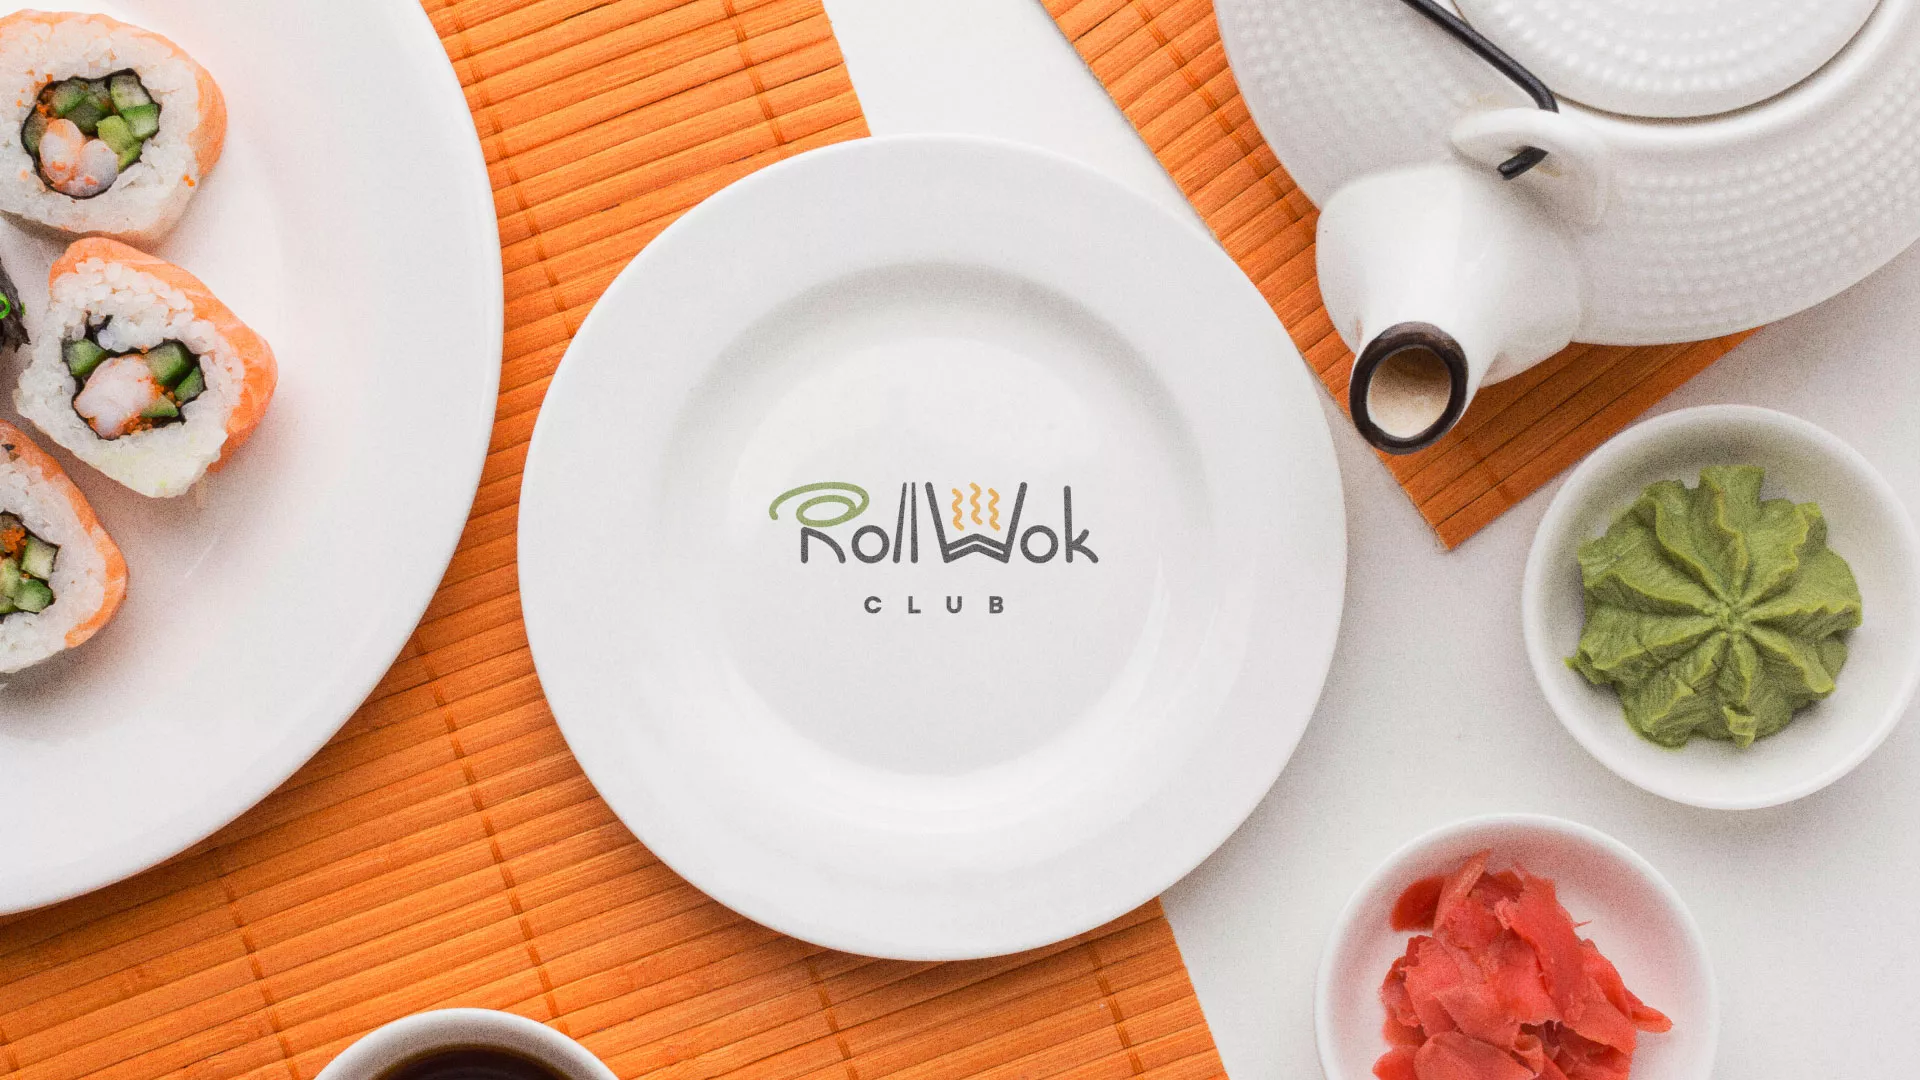 Разработка логотипа и фирменного стиля суши-бара «Roll Wok Club» в Курильске